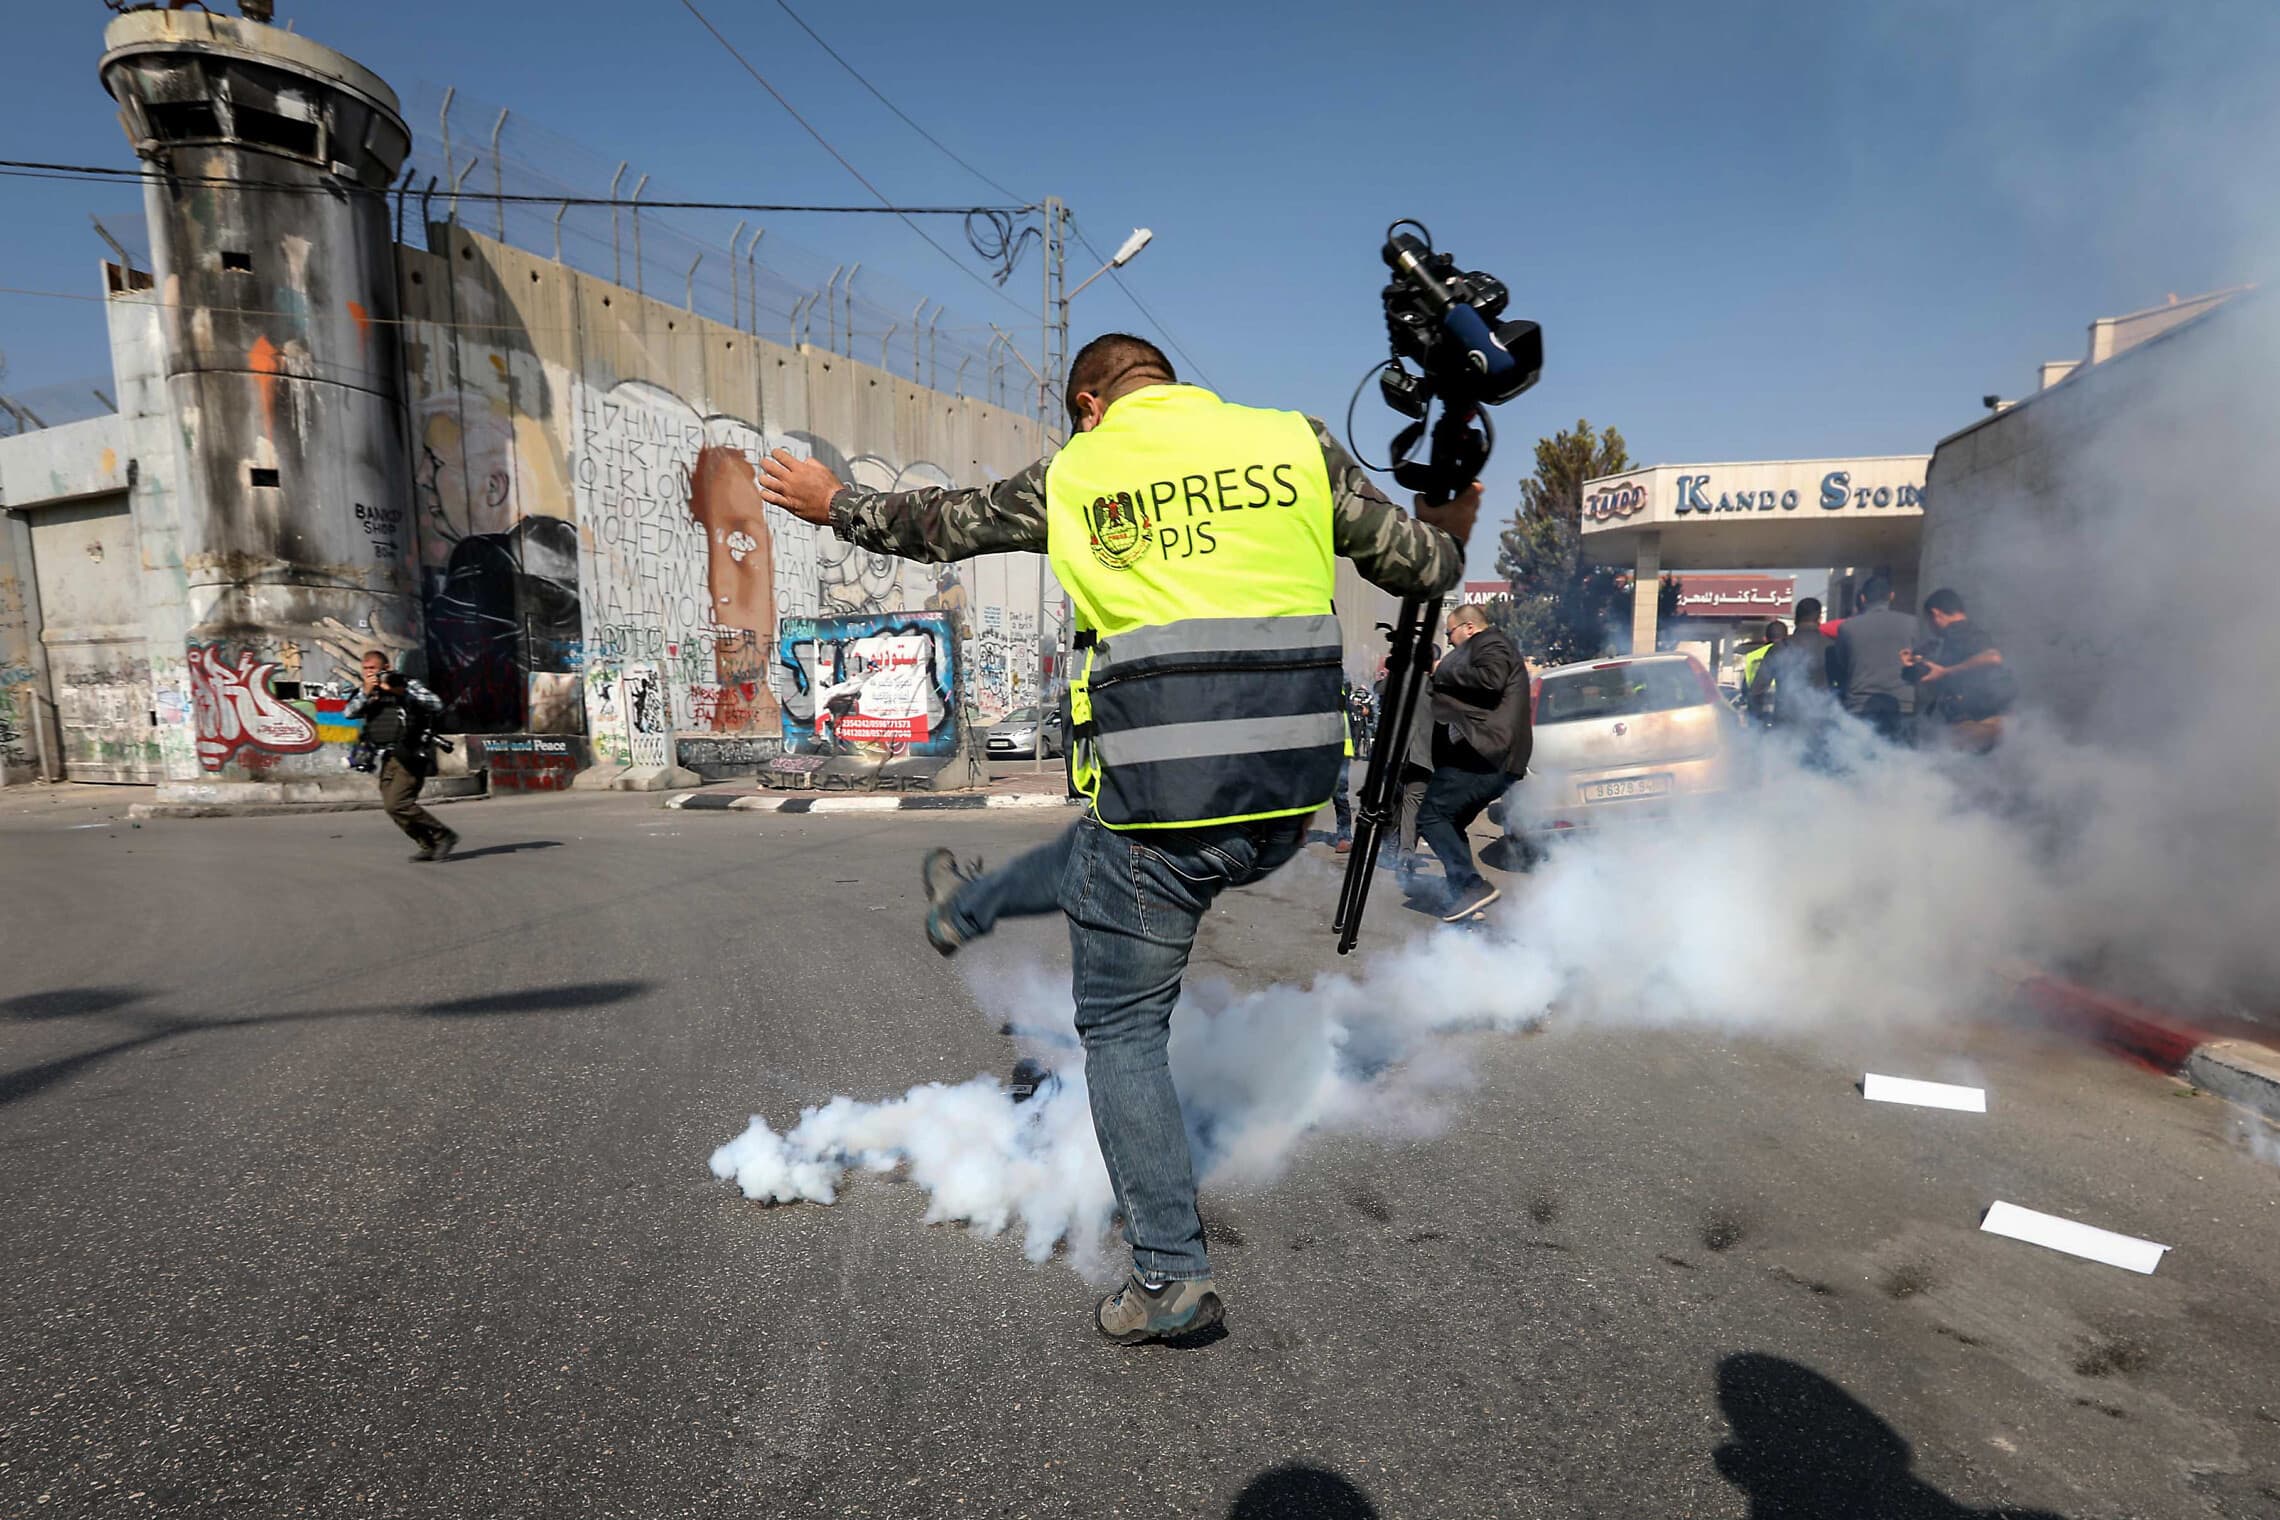 שוטר מג&quot;ב יורה לעבר עיתונאי בבית לחם, 17 בנובמבר 2019 (צילום: Wisam Hashlamoun/Flash90)